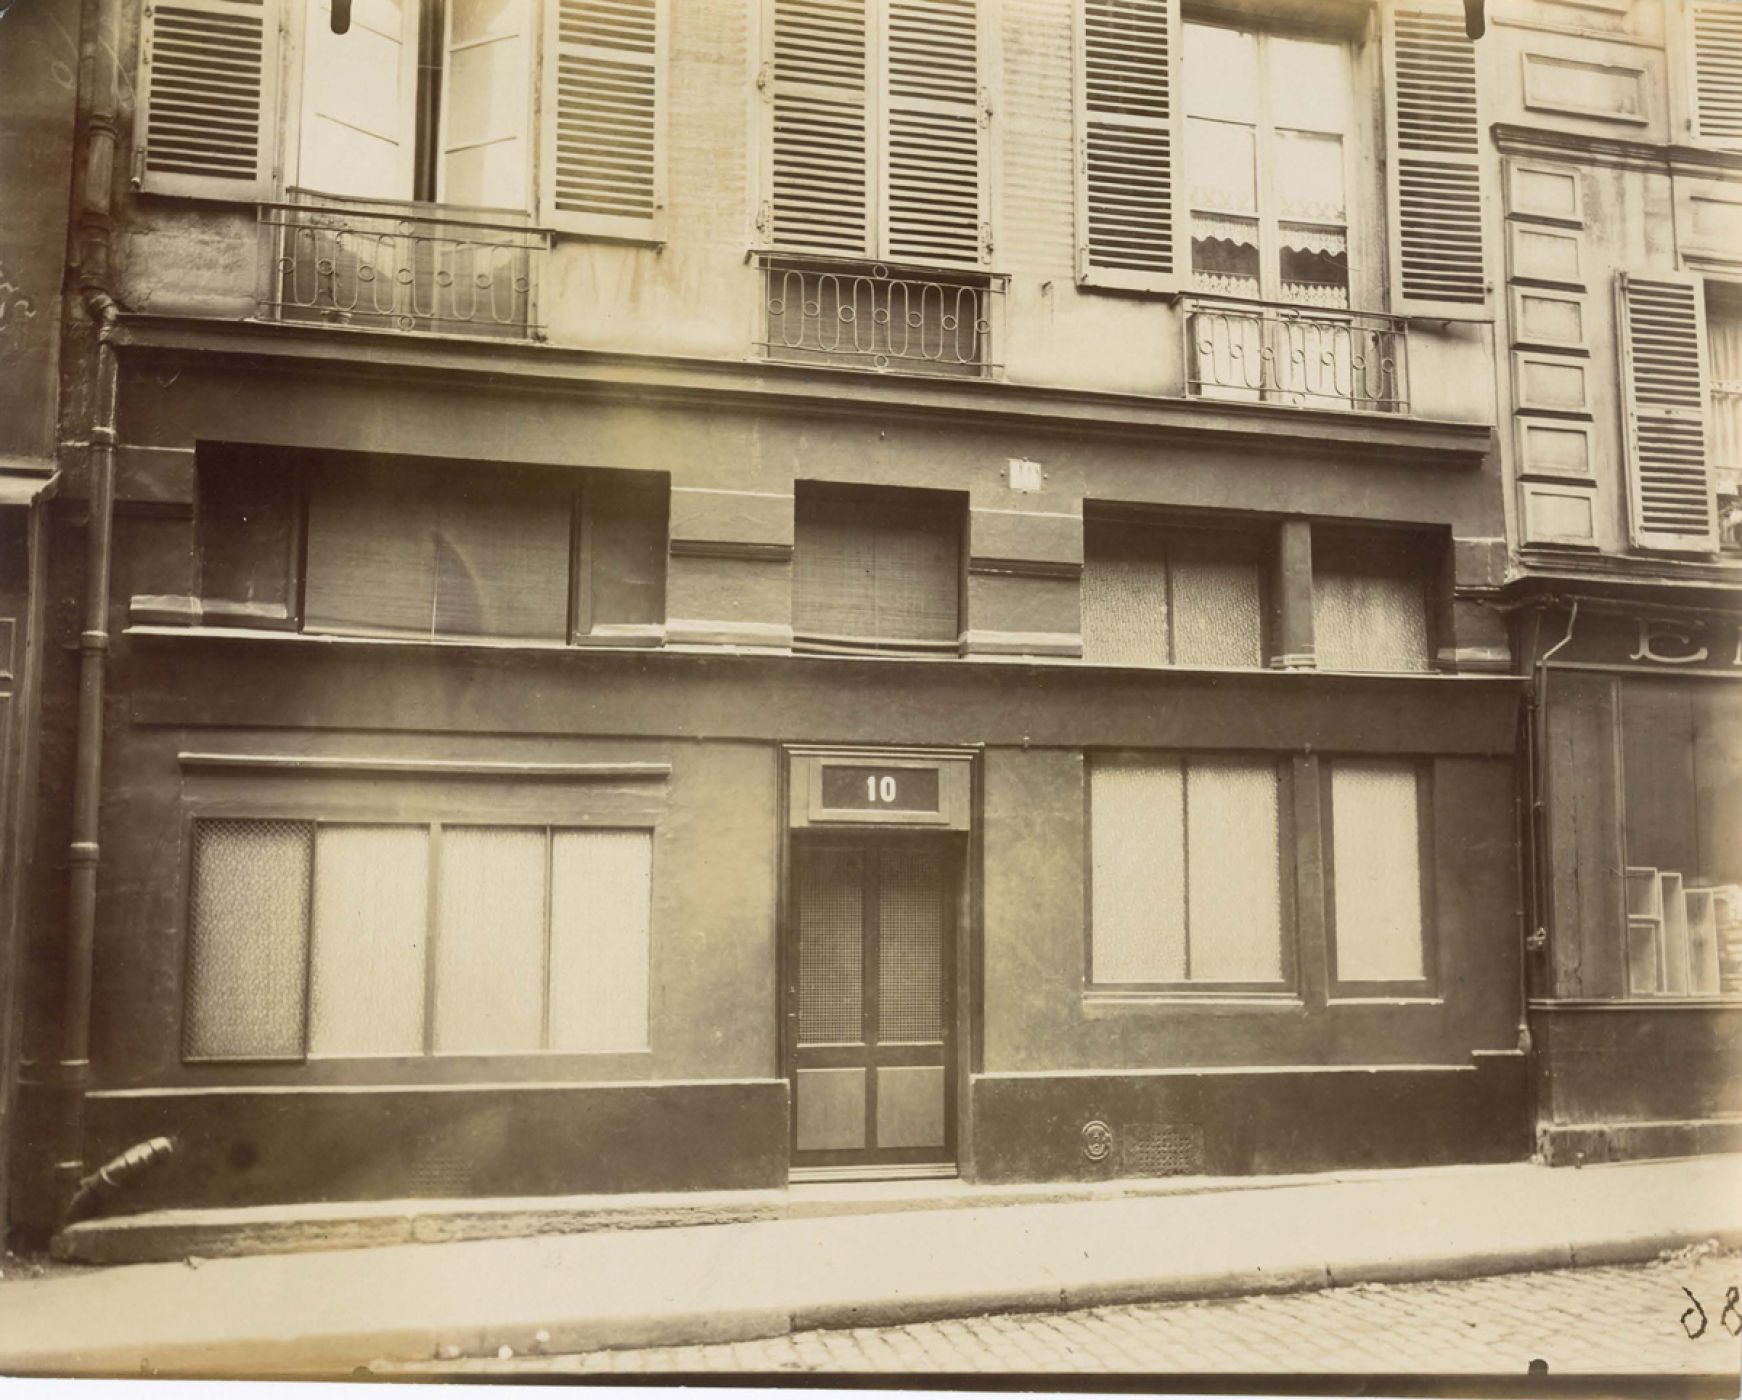 Eugène Atget, “La maison close, 10 rue Mazet”, 1921